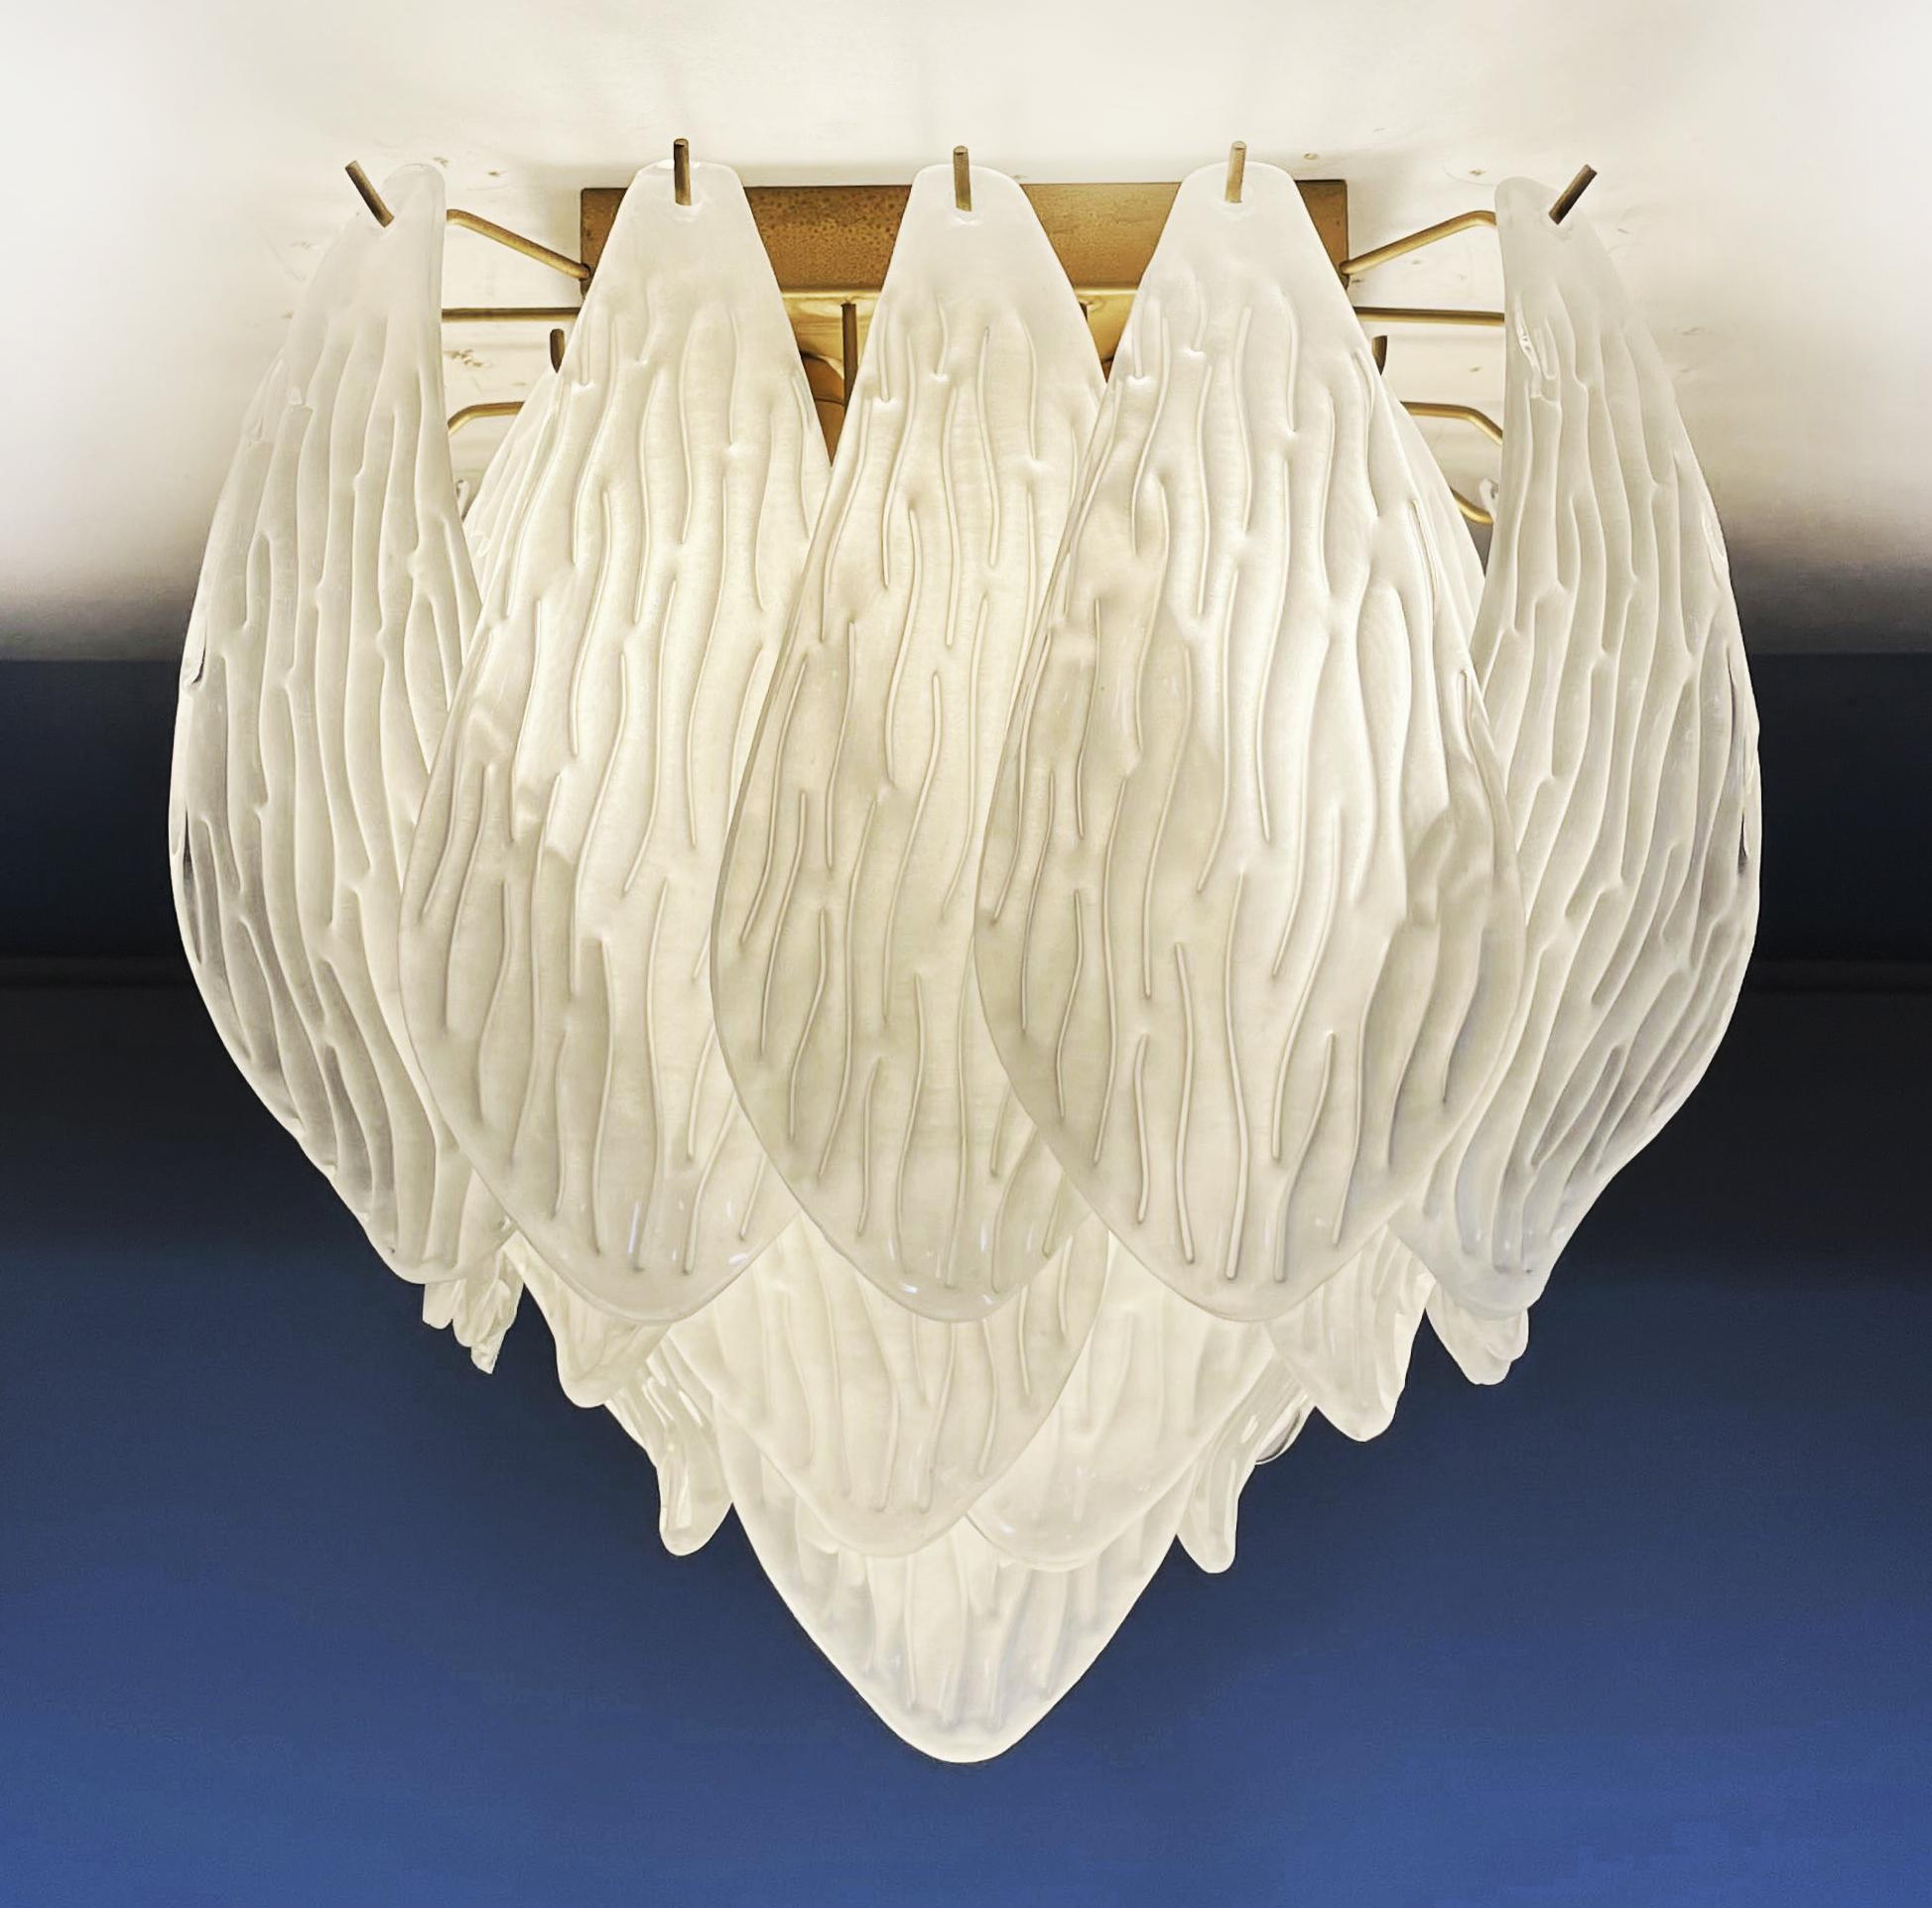 Espectaculares lámparas de techo con 32 hojas de cristal tallado esmerilado de Murano en marco de metal pintado dorado. Elegante objeto luminoso. Periodo: finales del siglo XX
Dimensiones: 45 cm (17,50 pulgadas) de alto; 40 cm (15,50 pulgadas) de